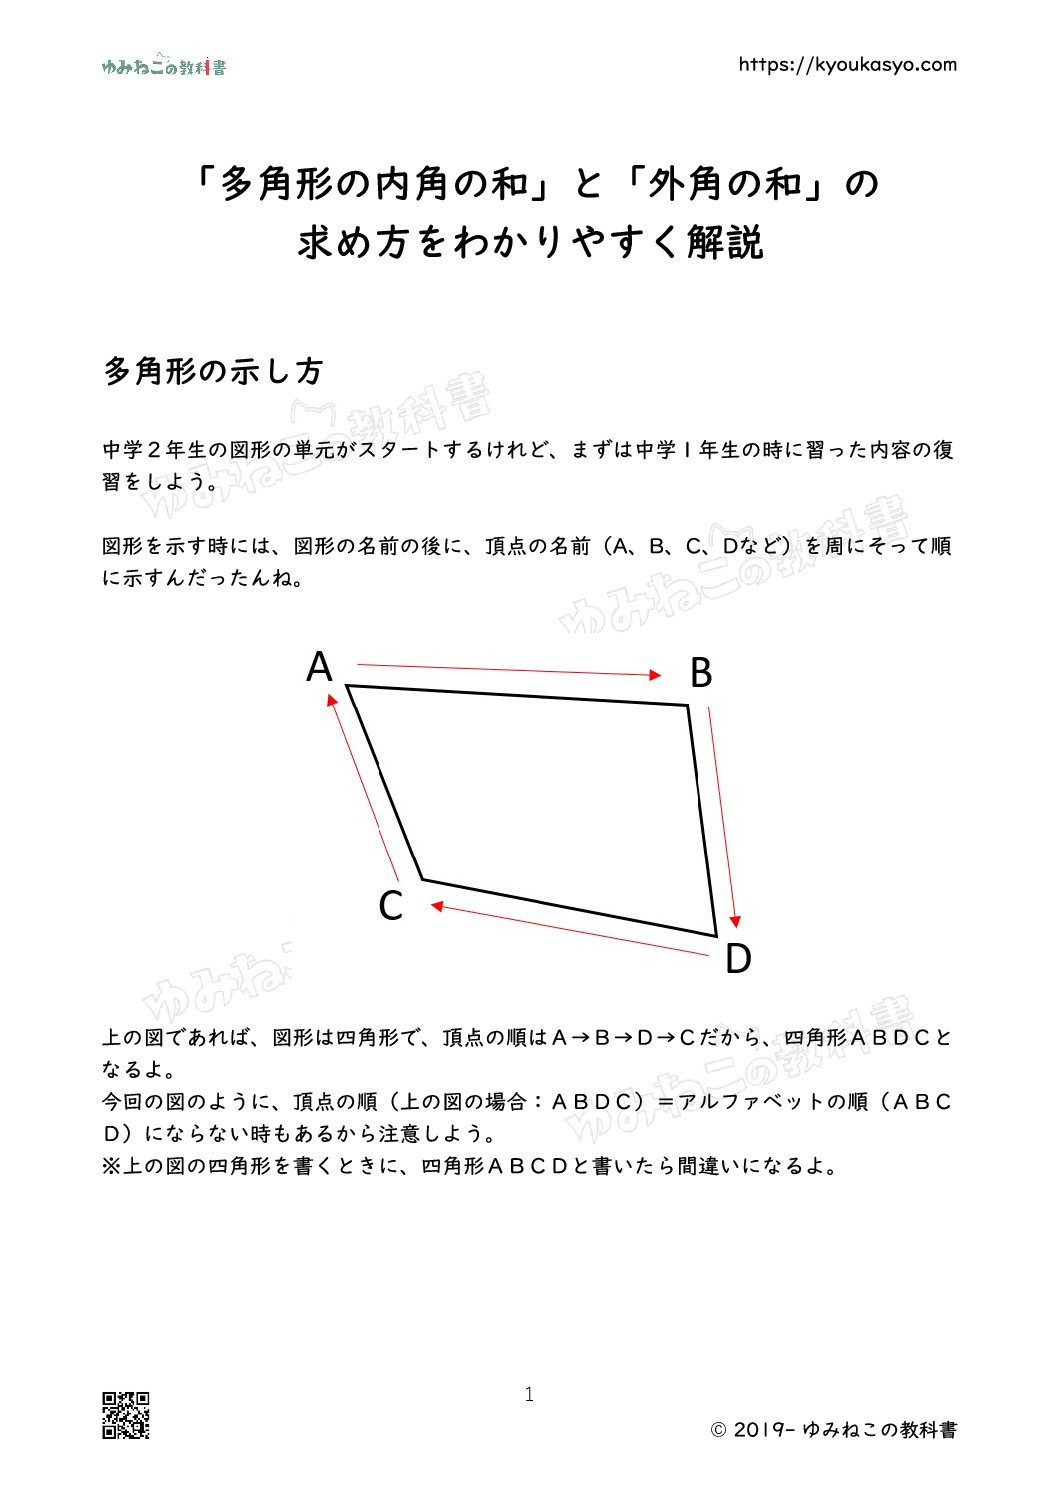 「多角形の内角の和」と「外角の和」の 求め方をわかりやすく解説